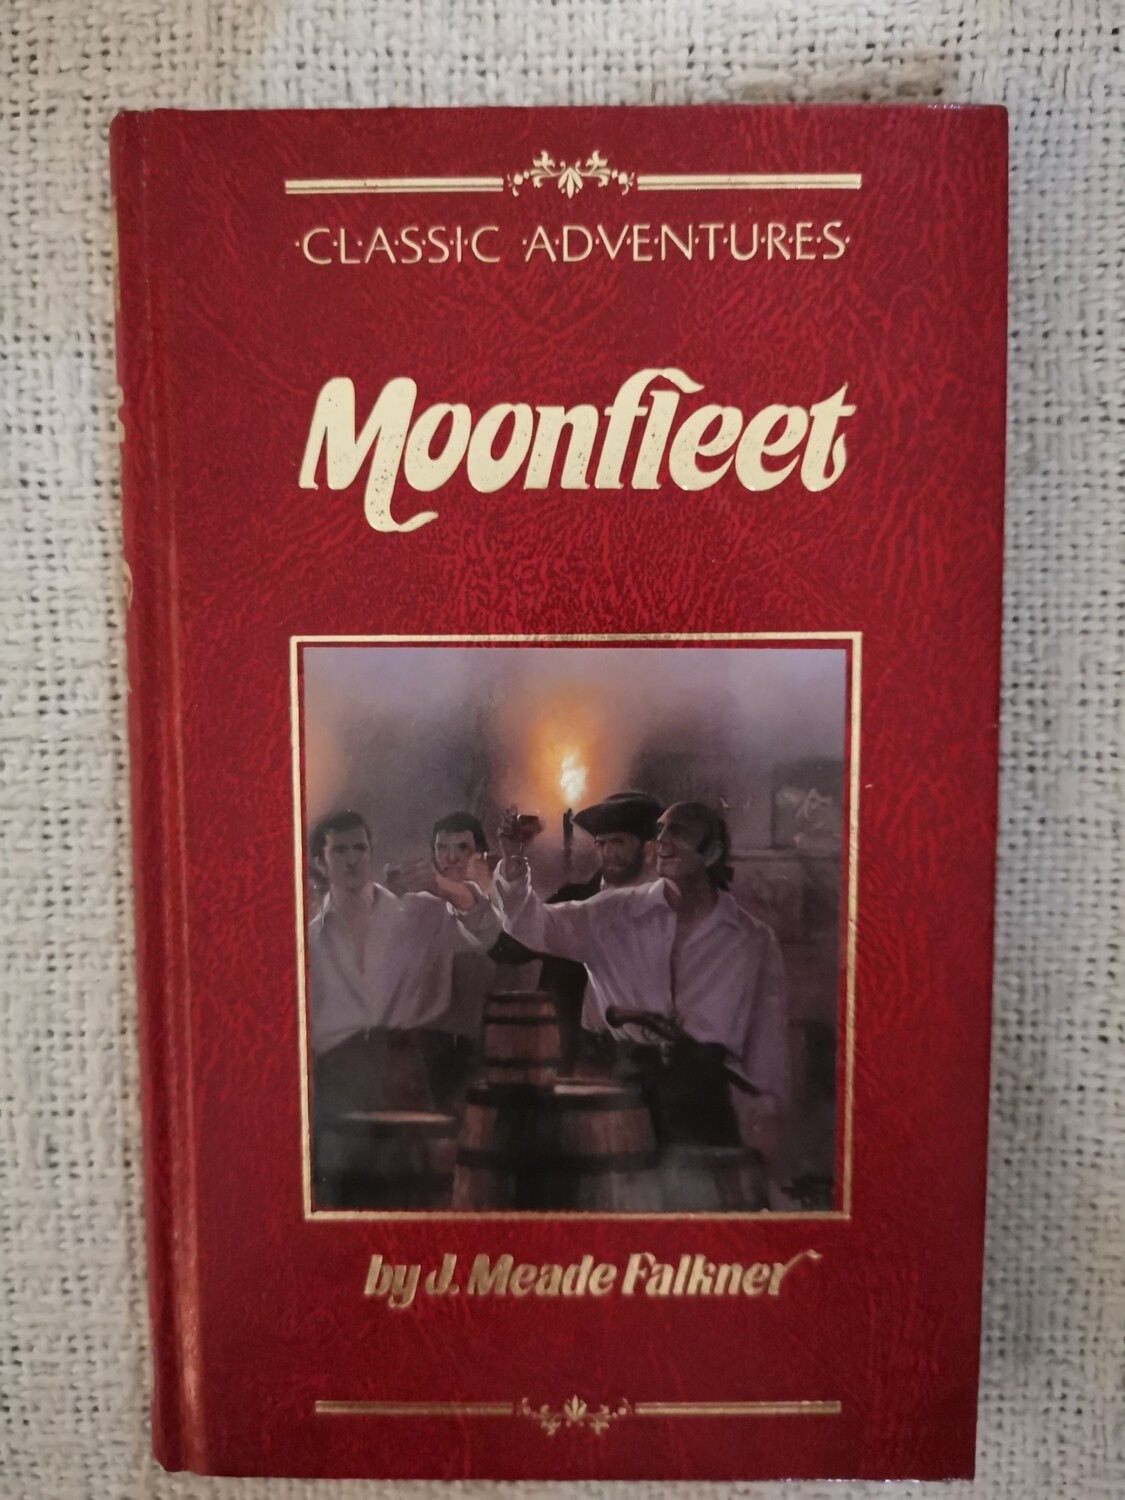 Moon fleet, J. Meade Falkner